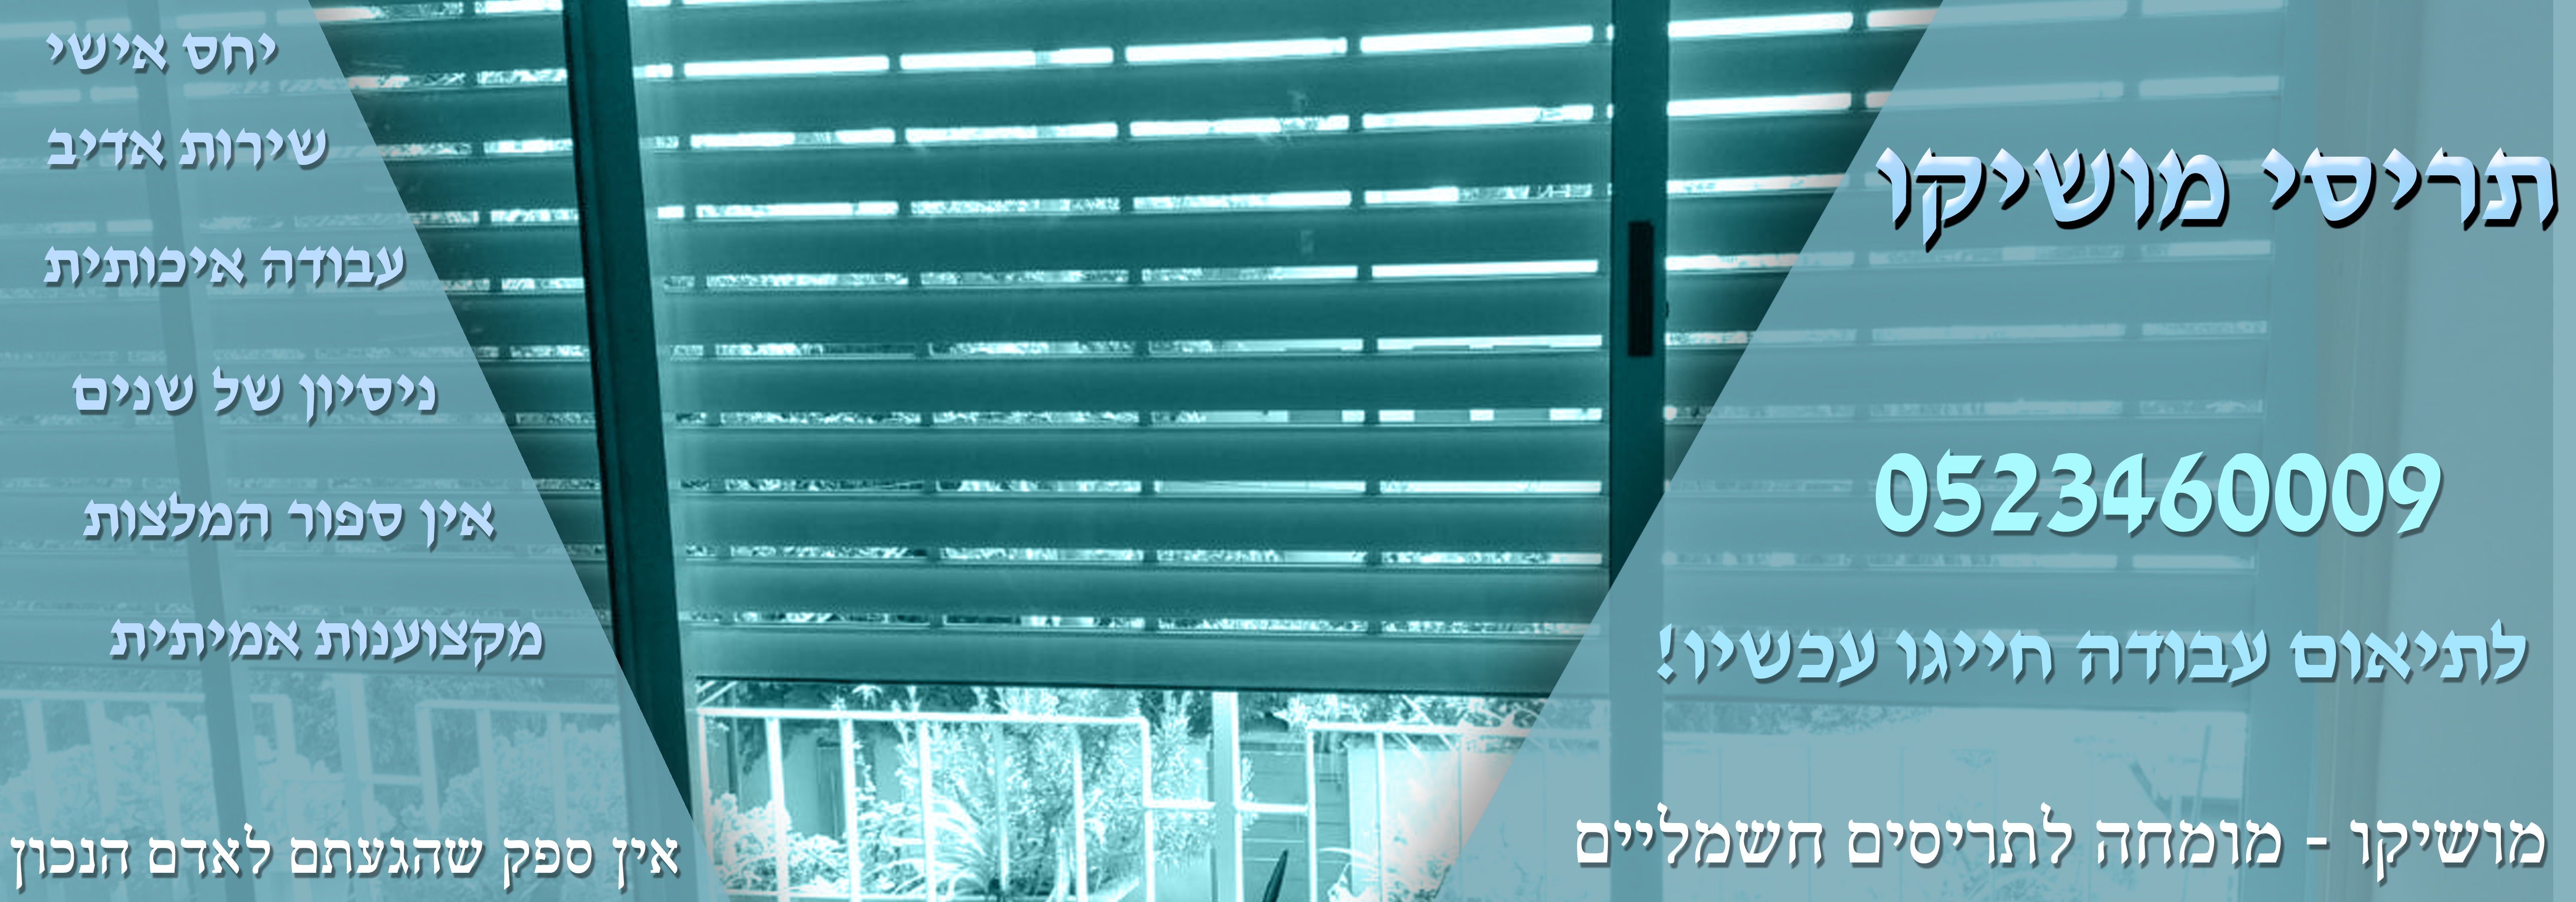 תיקון תריסים חשמליים בתל אביב